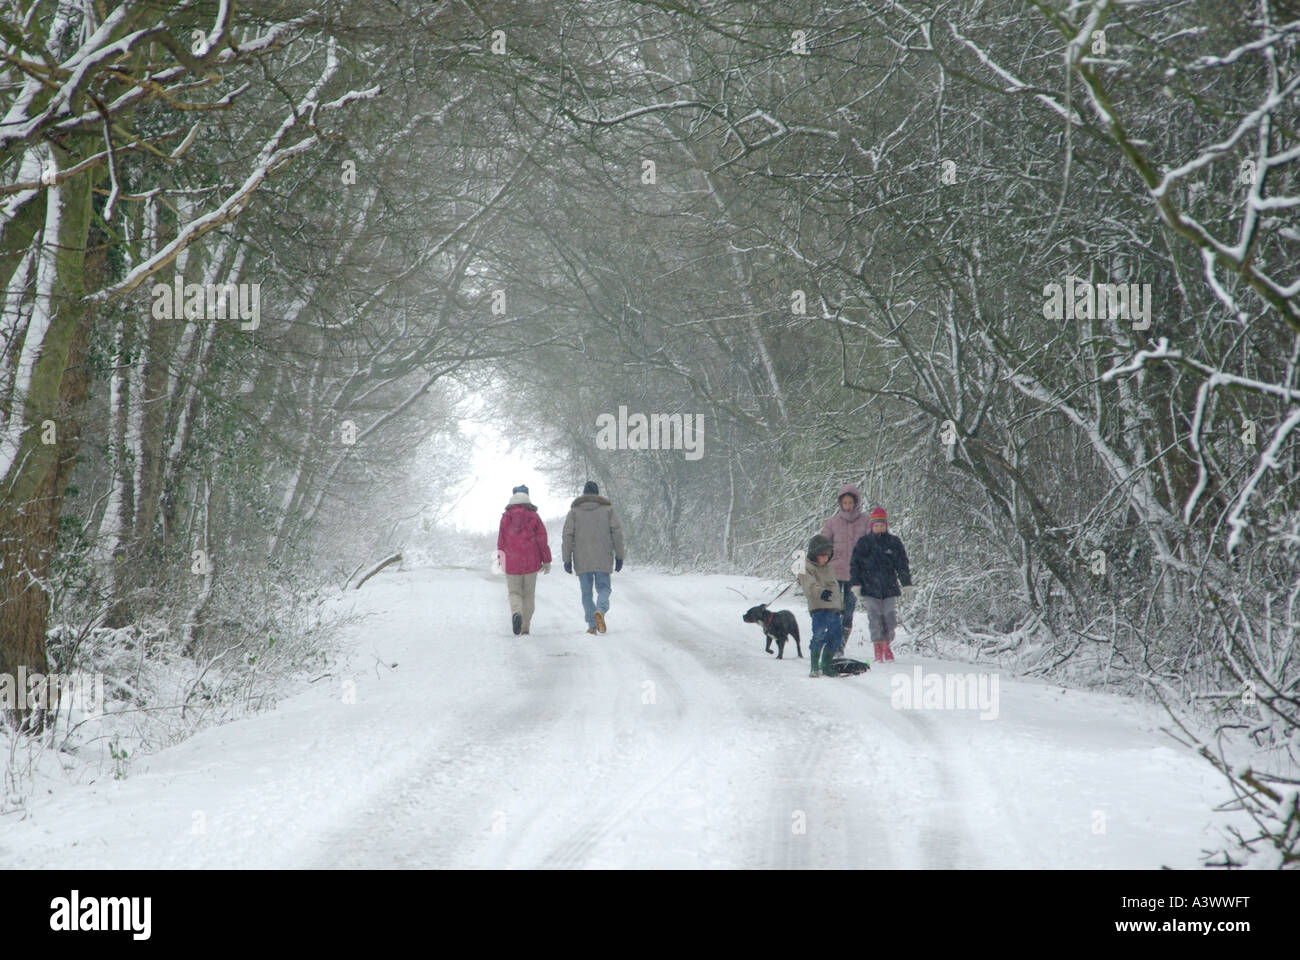 Allée de campagne enneigée vue arrière couple adulte à pied et vue avant famille avec enfants chien d'entraînement sous le tunnel des arbres d'hiver Angleterre Royaume-Uni Banque D'Images